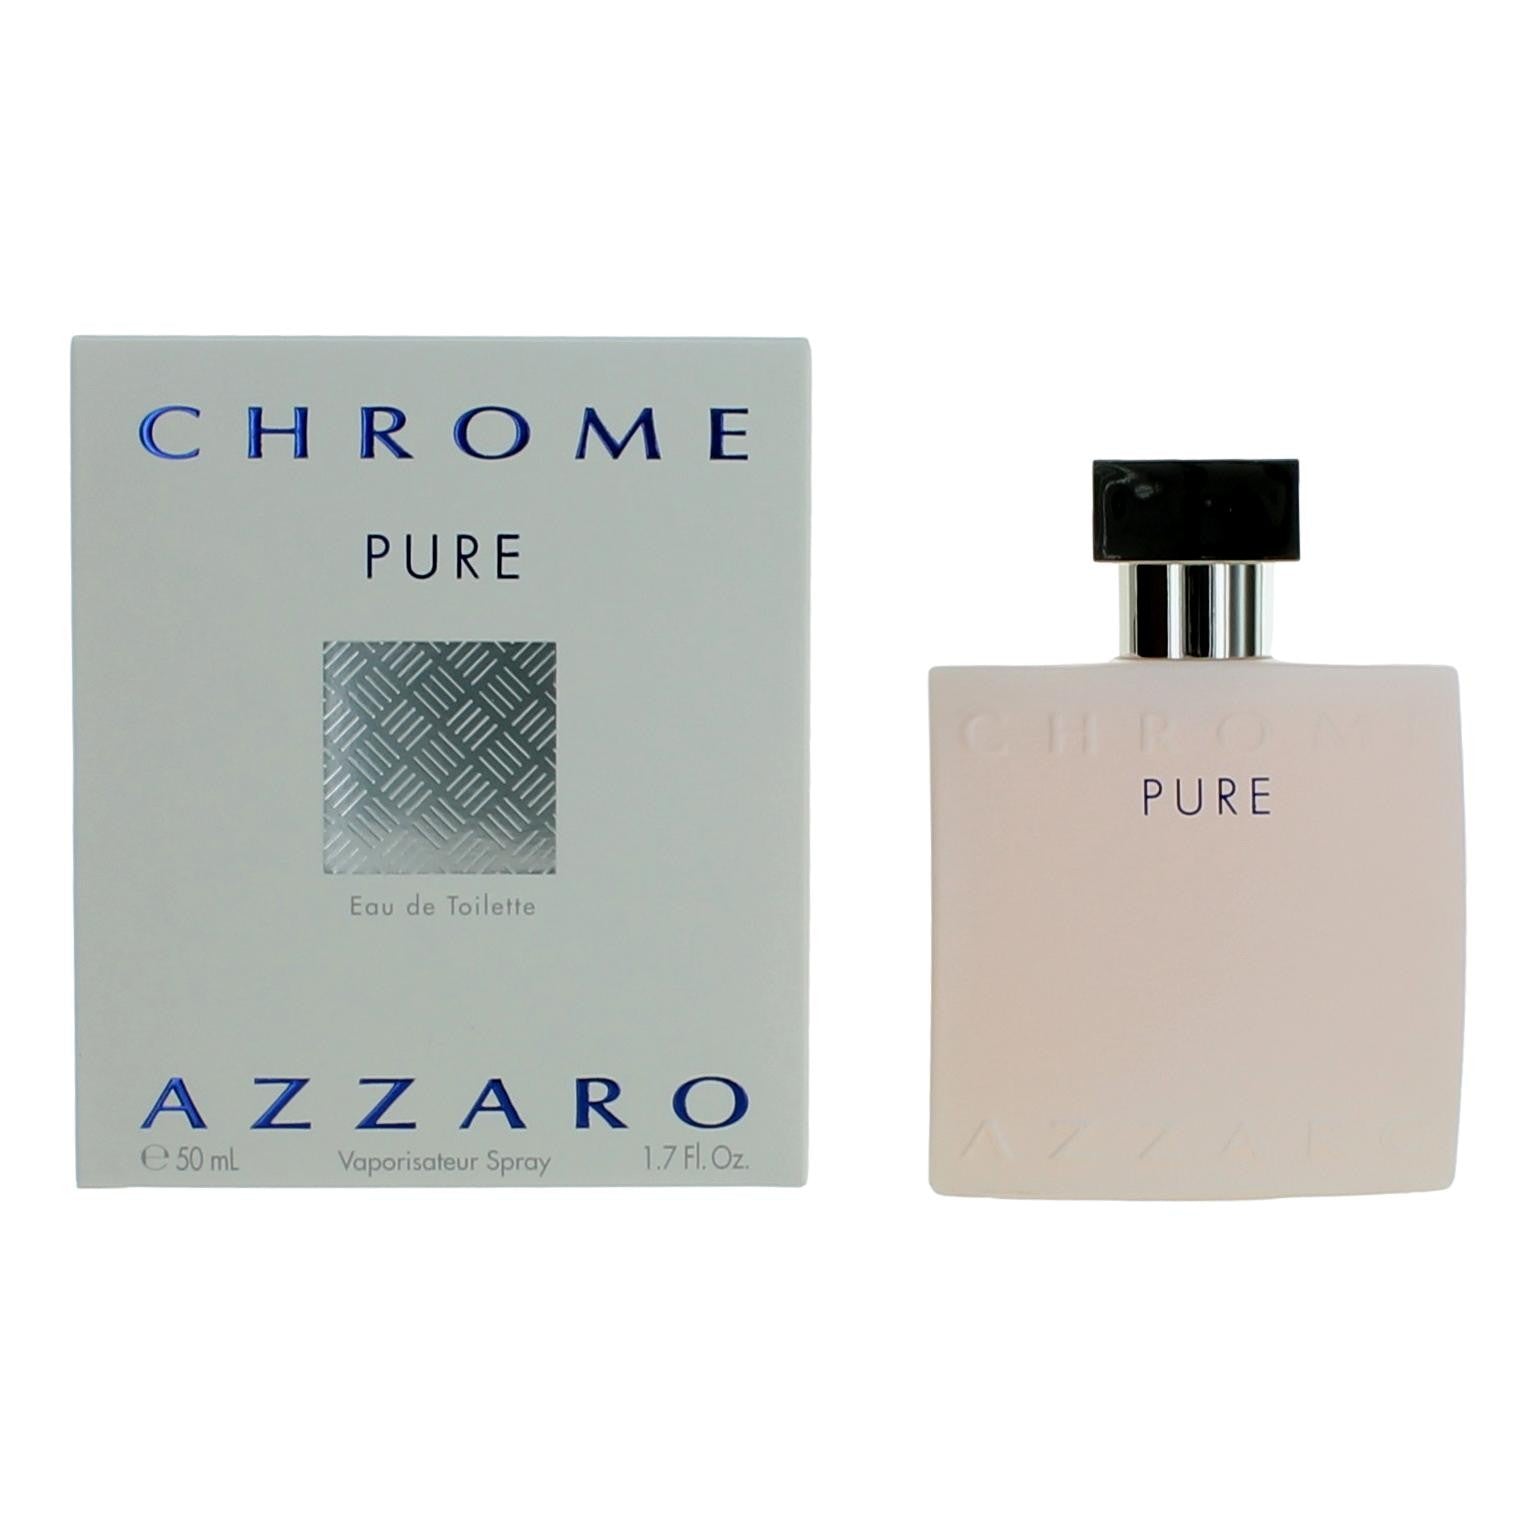 Bottle of Azzaro Chrome Pure, 1.7 oz 